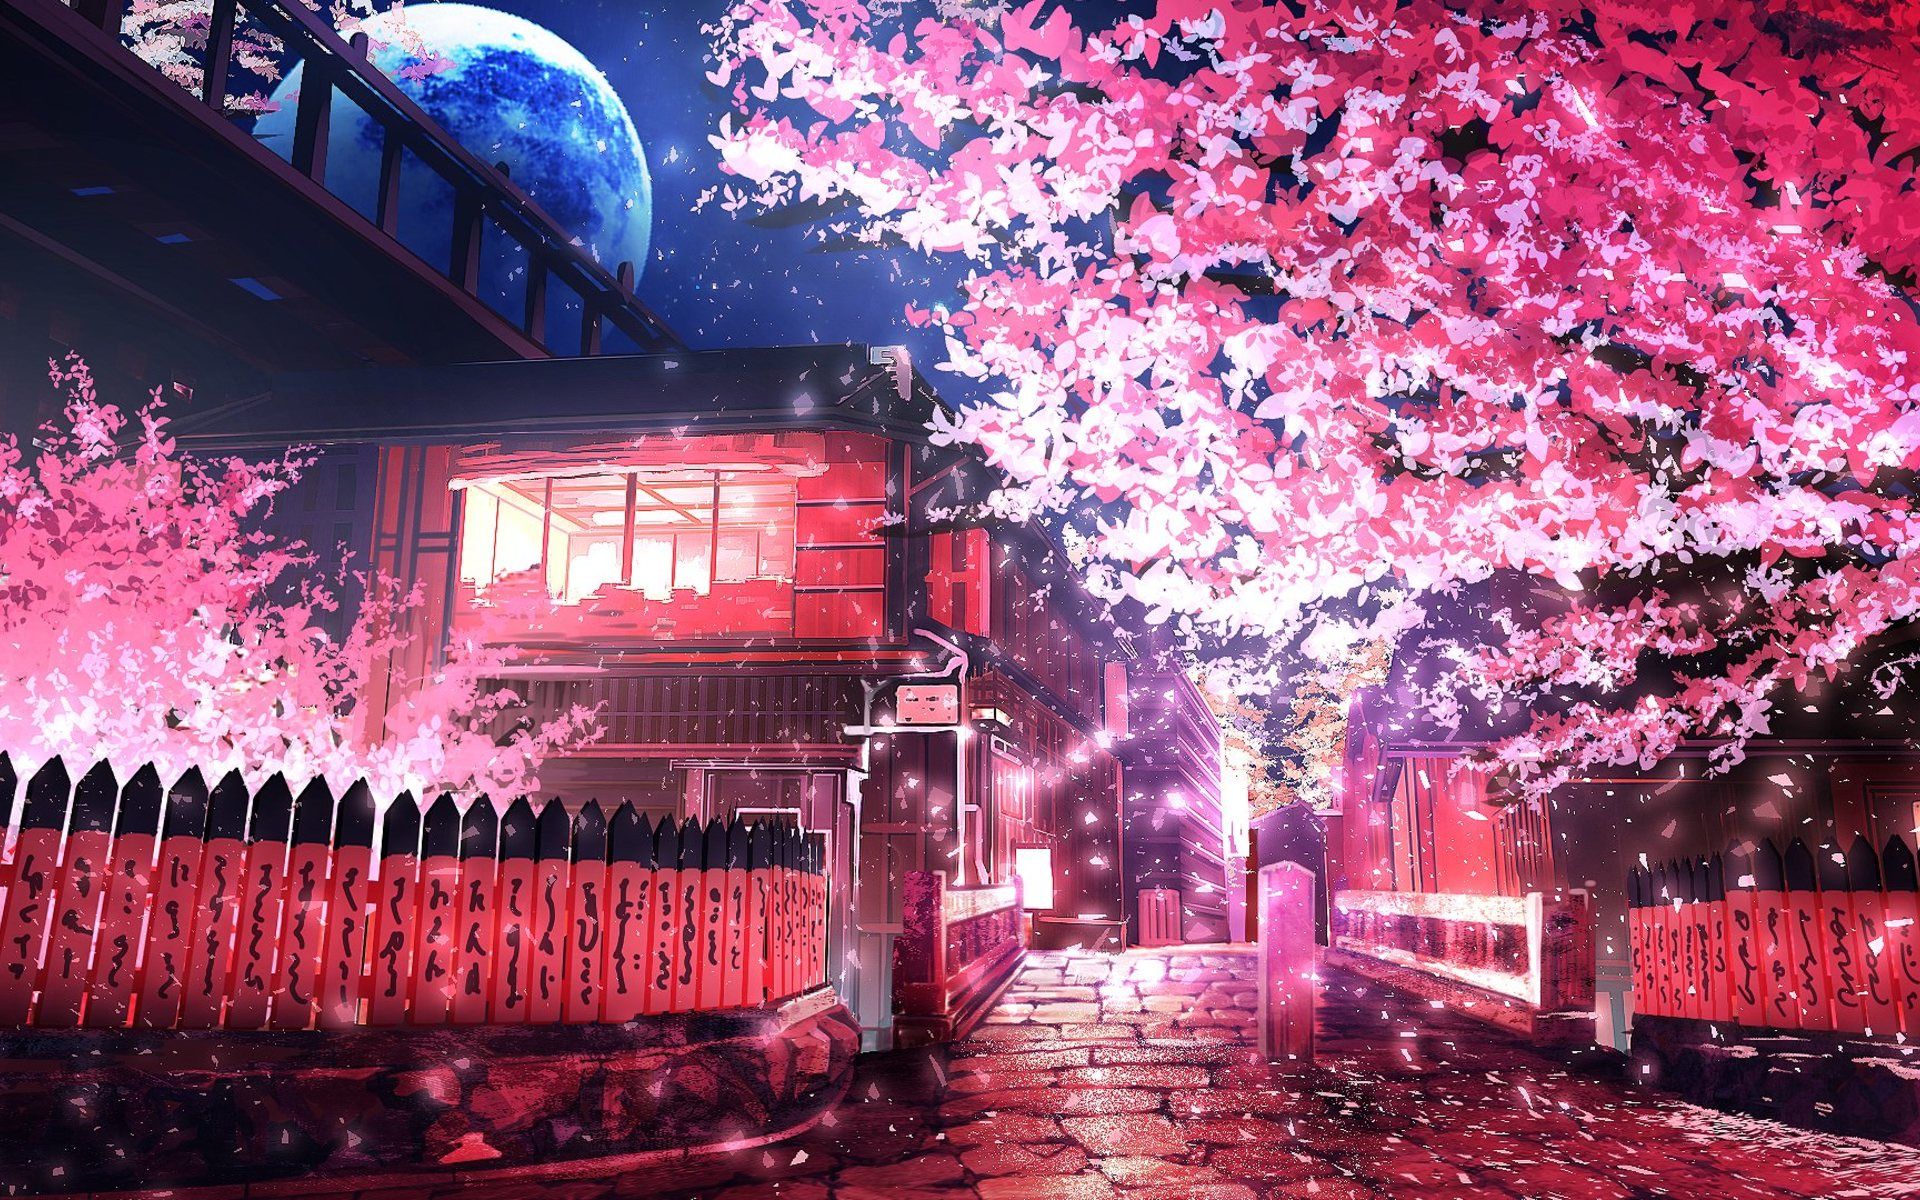 نقاشی صورتی اکلیلی فصل بهار در شب برای ایده با وضوح hd